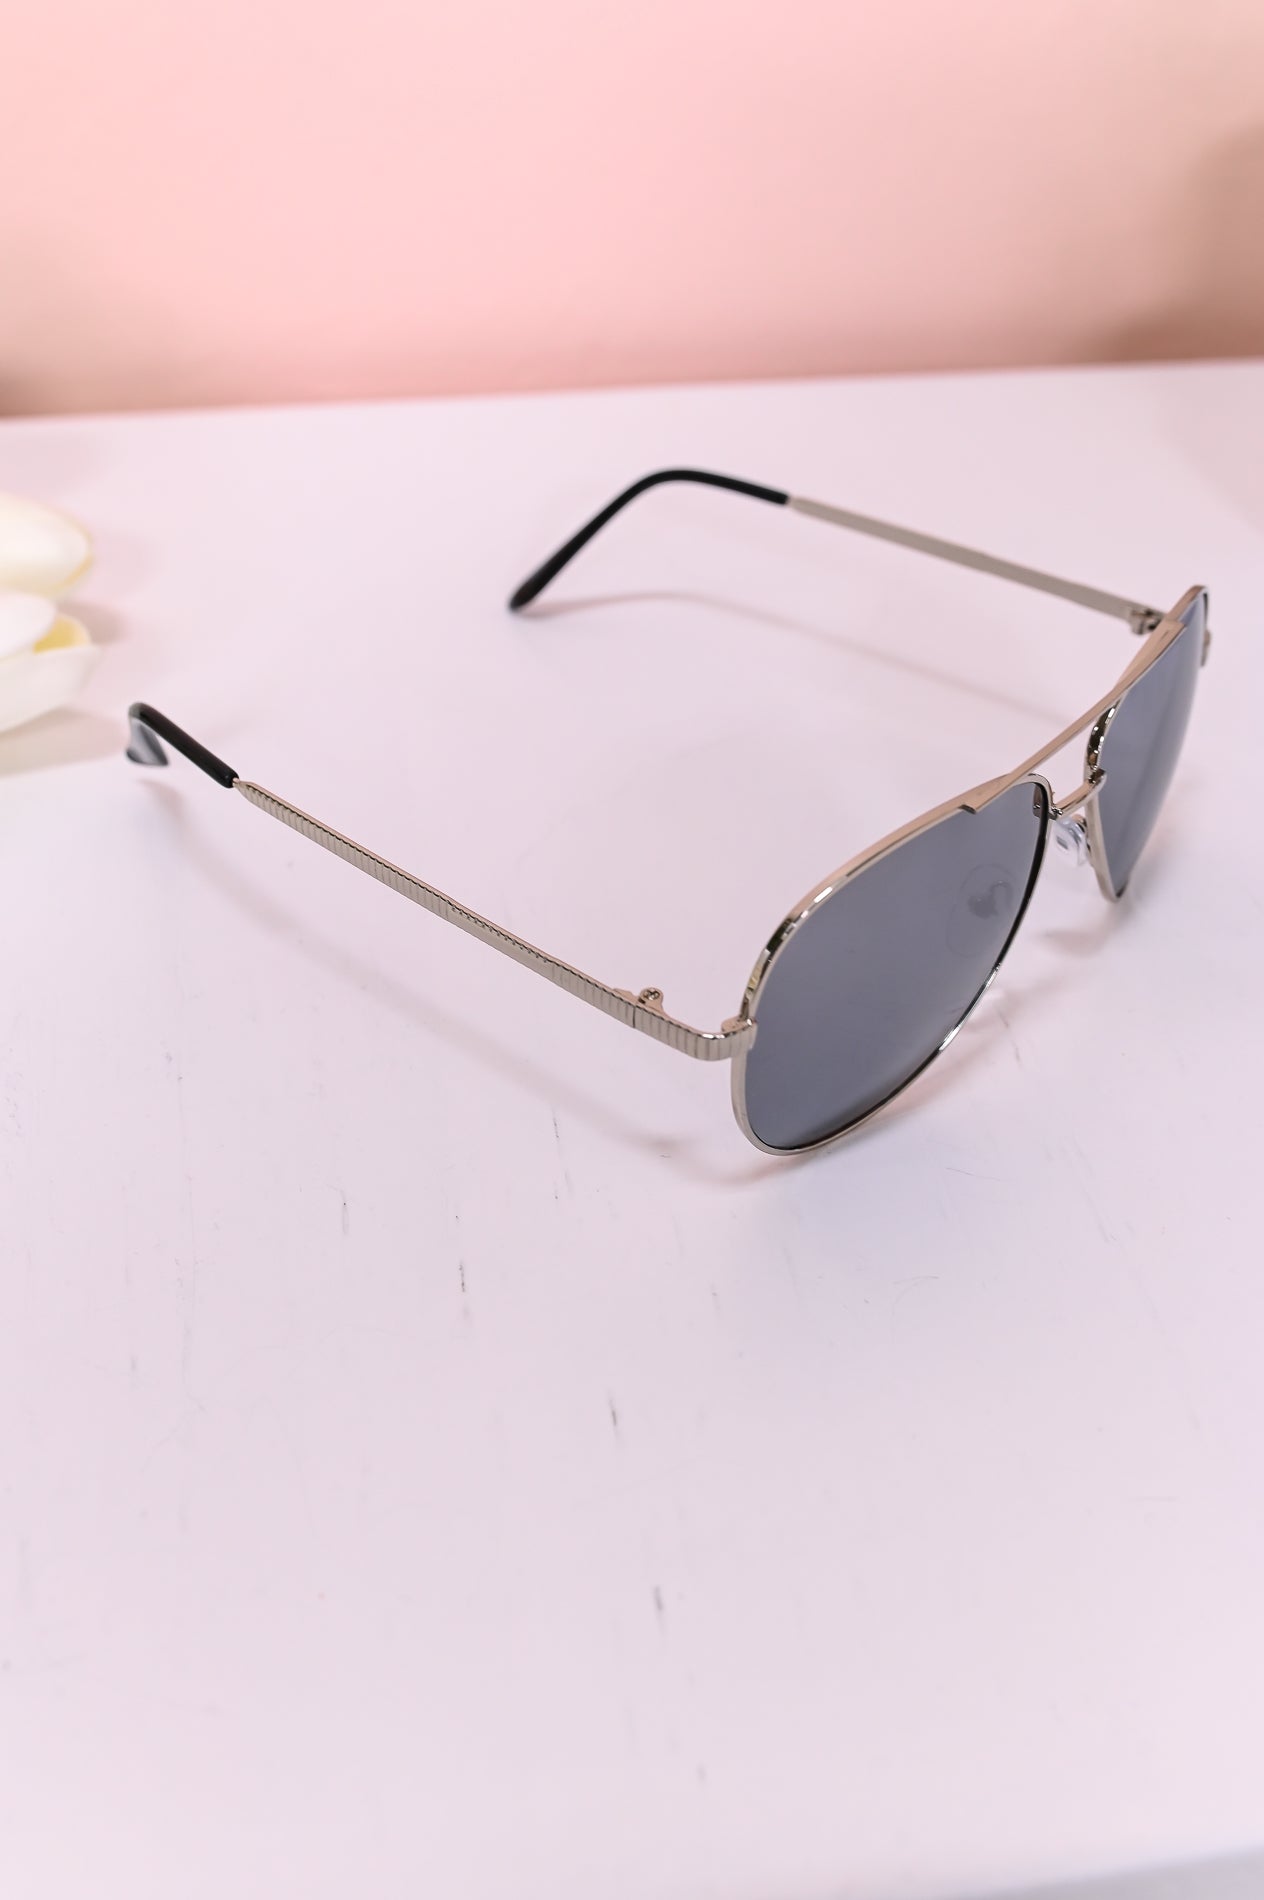 Silver/Black Aviator Sunglasses - SGL348SI